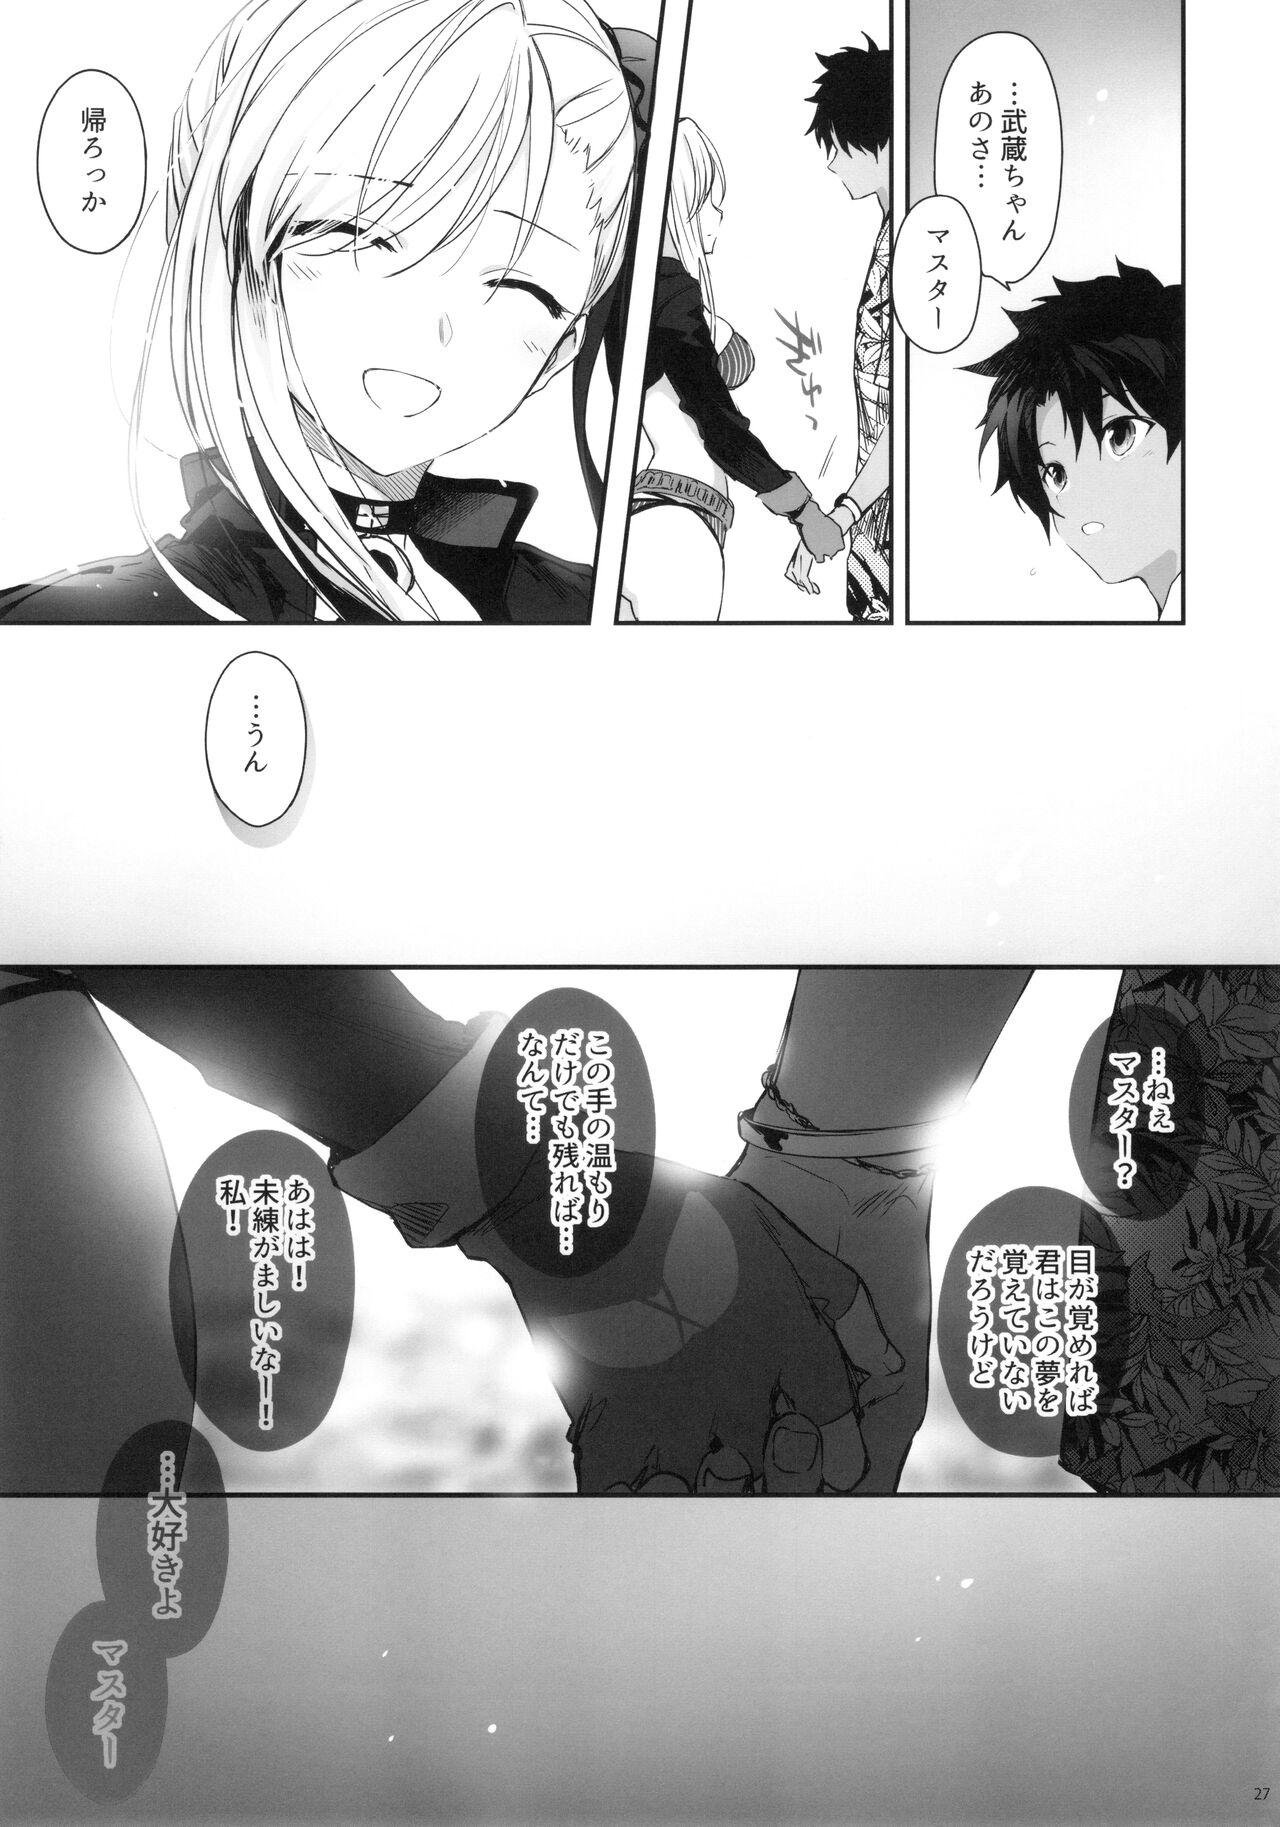 Married Netsu no Tomotta Yubisaki de, Kimi no Rinkaku o Nazoru - Fate grand order Camgirls - Page 26